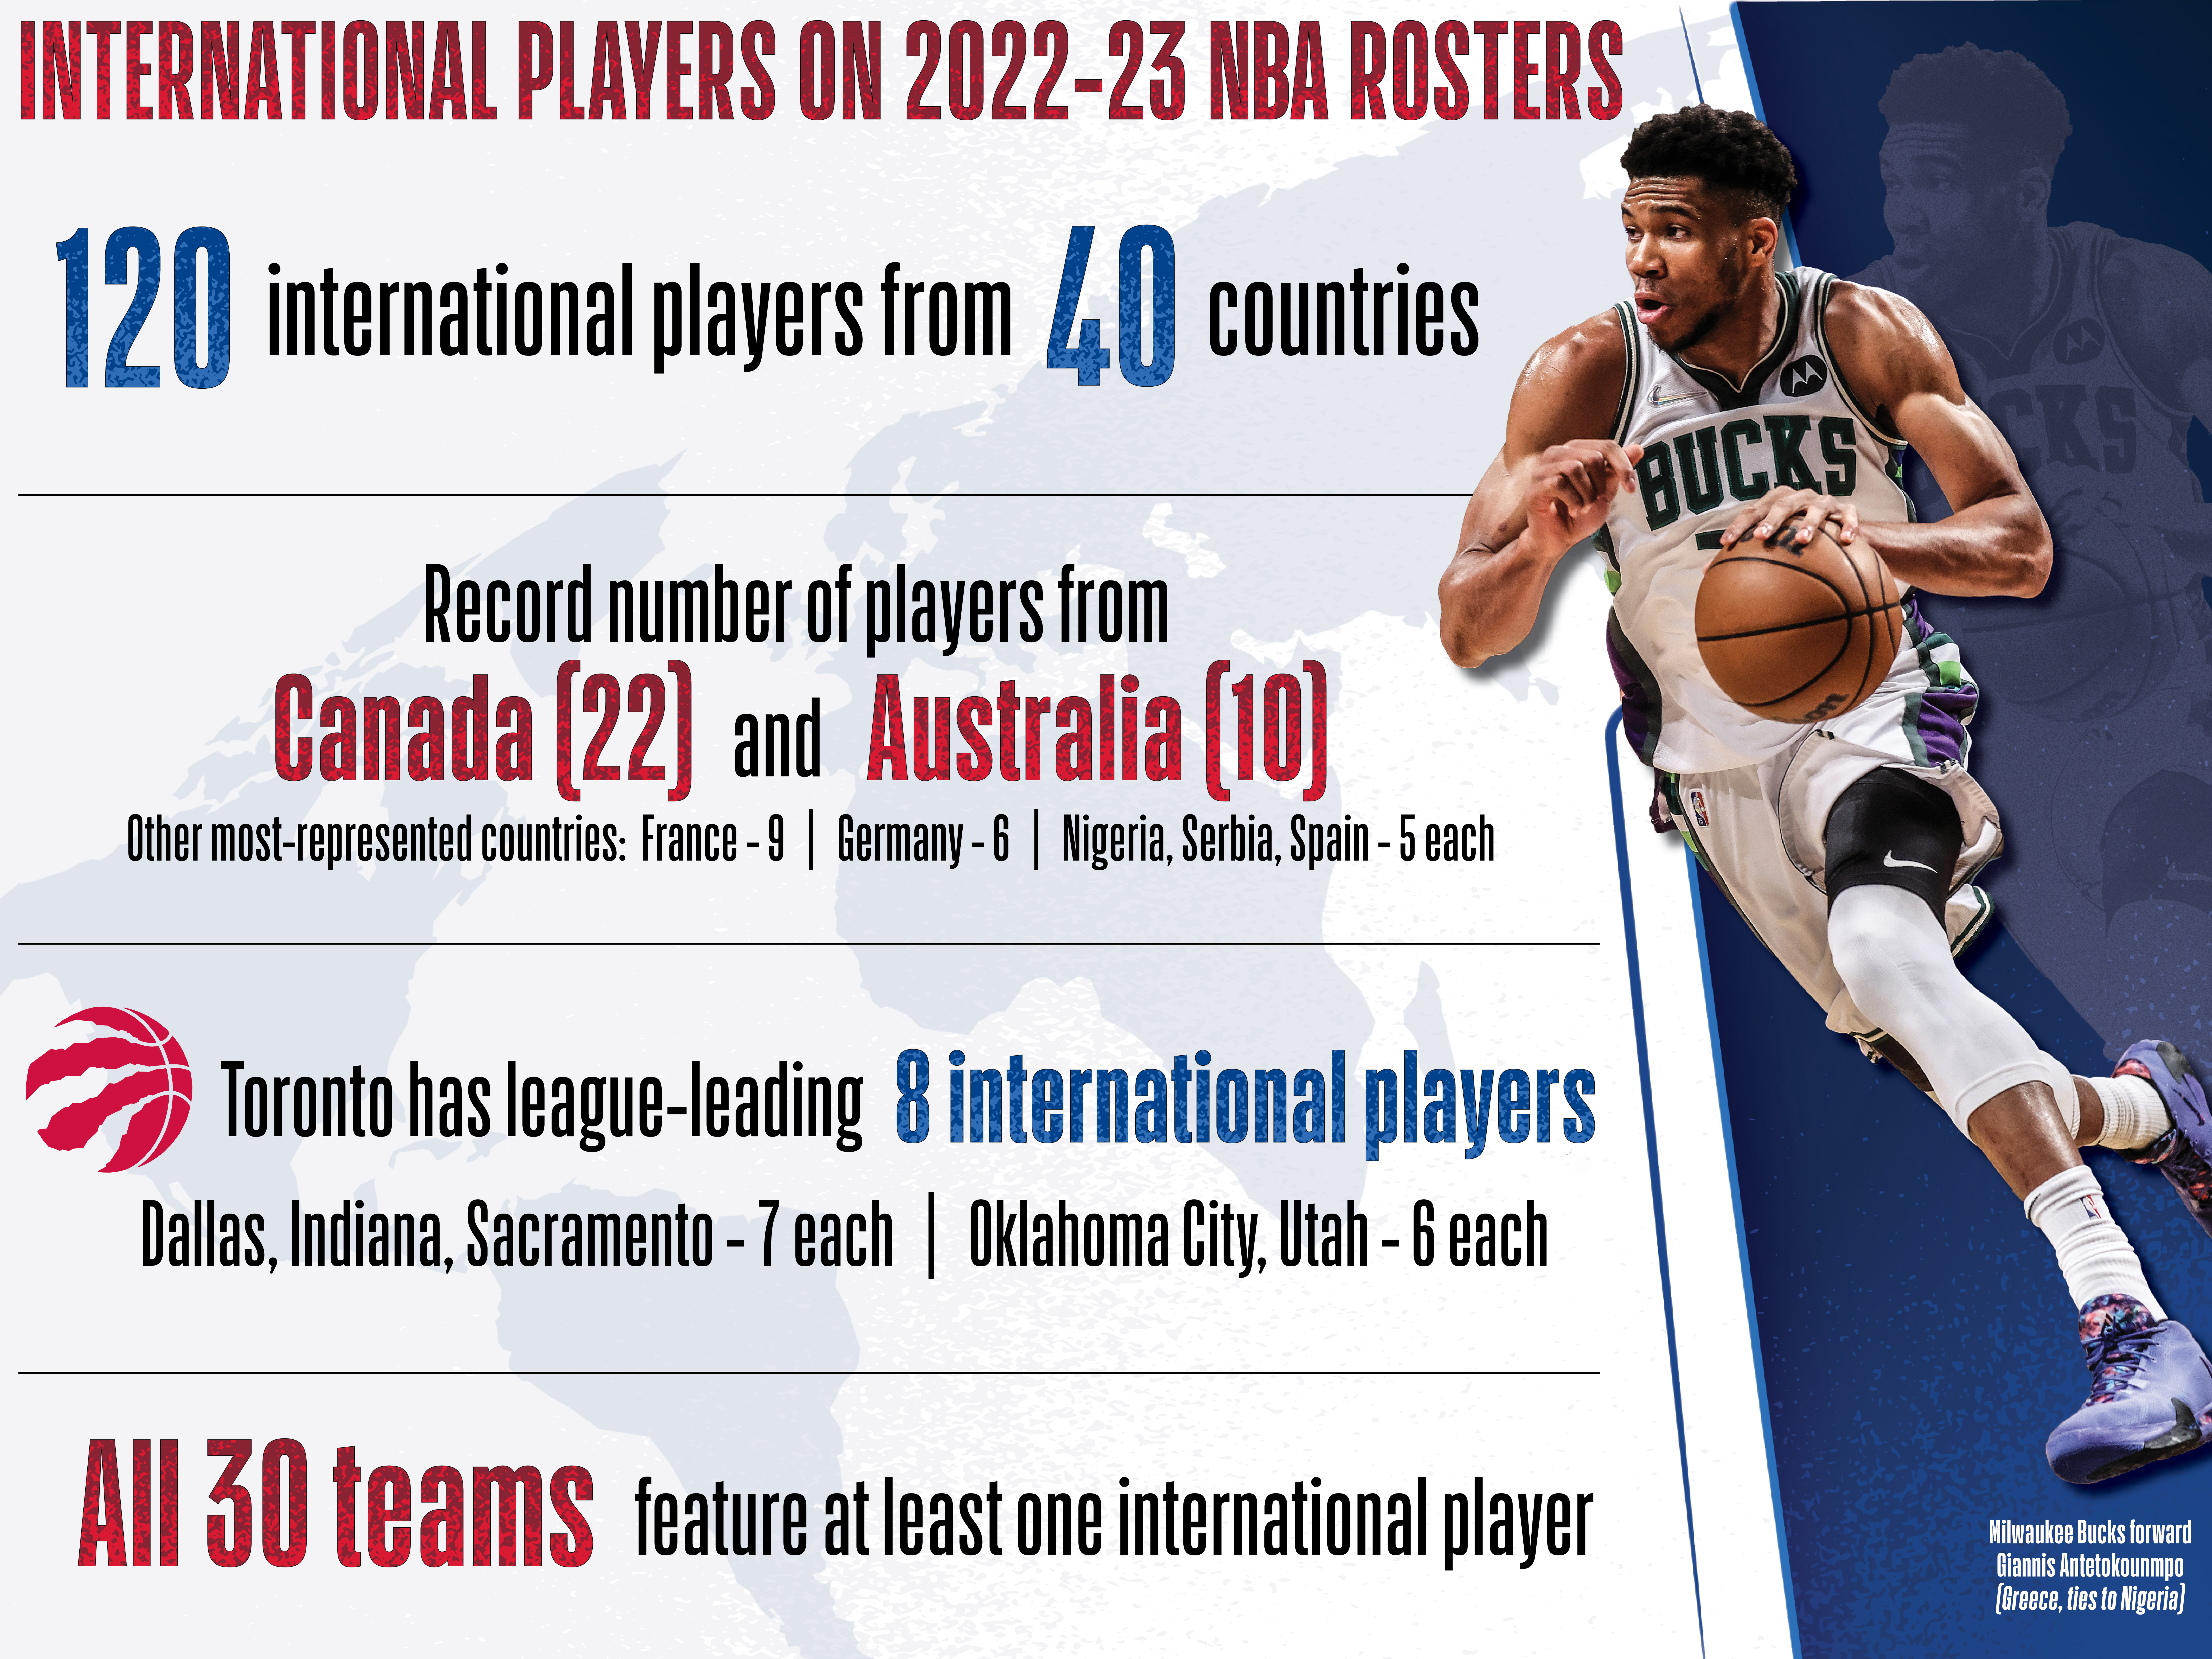 Los rosters de la NBA cuentan con 120 jugadores internacionales de 40 países y seis continentes